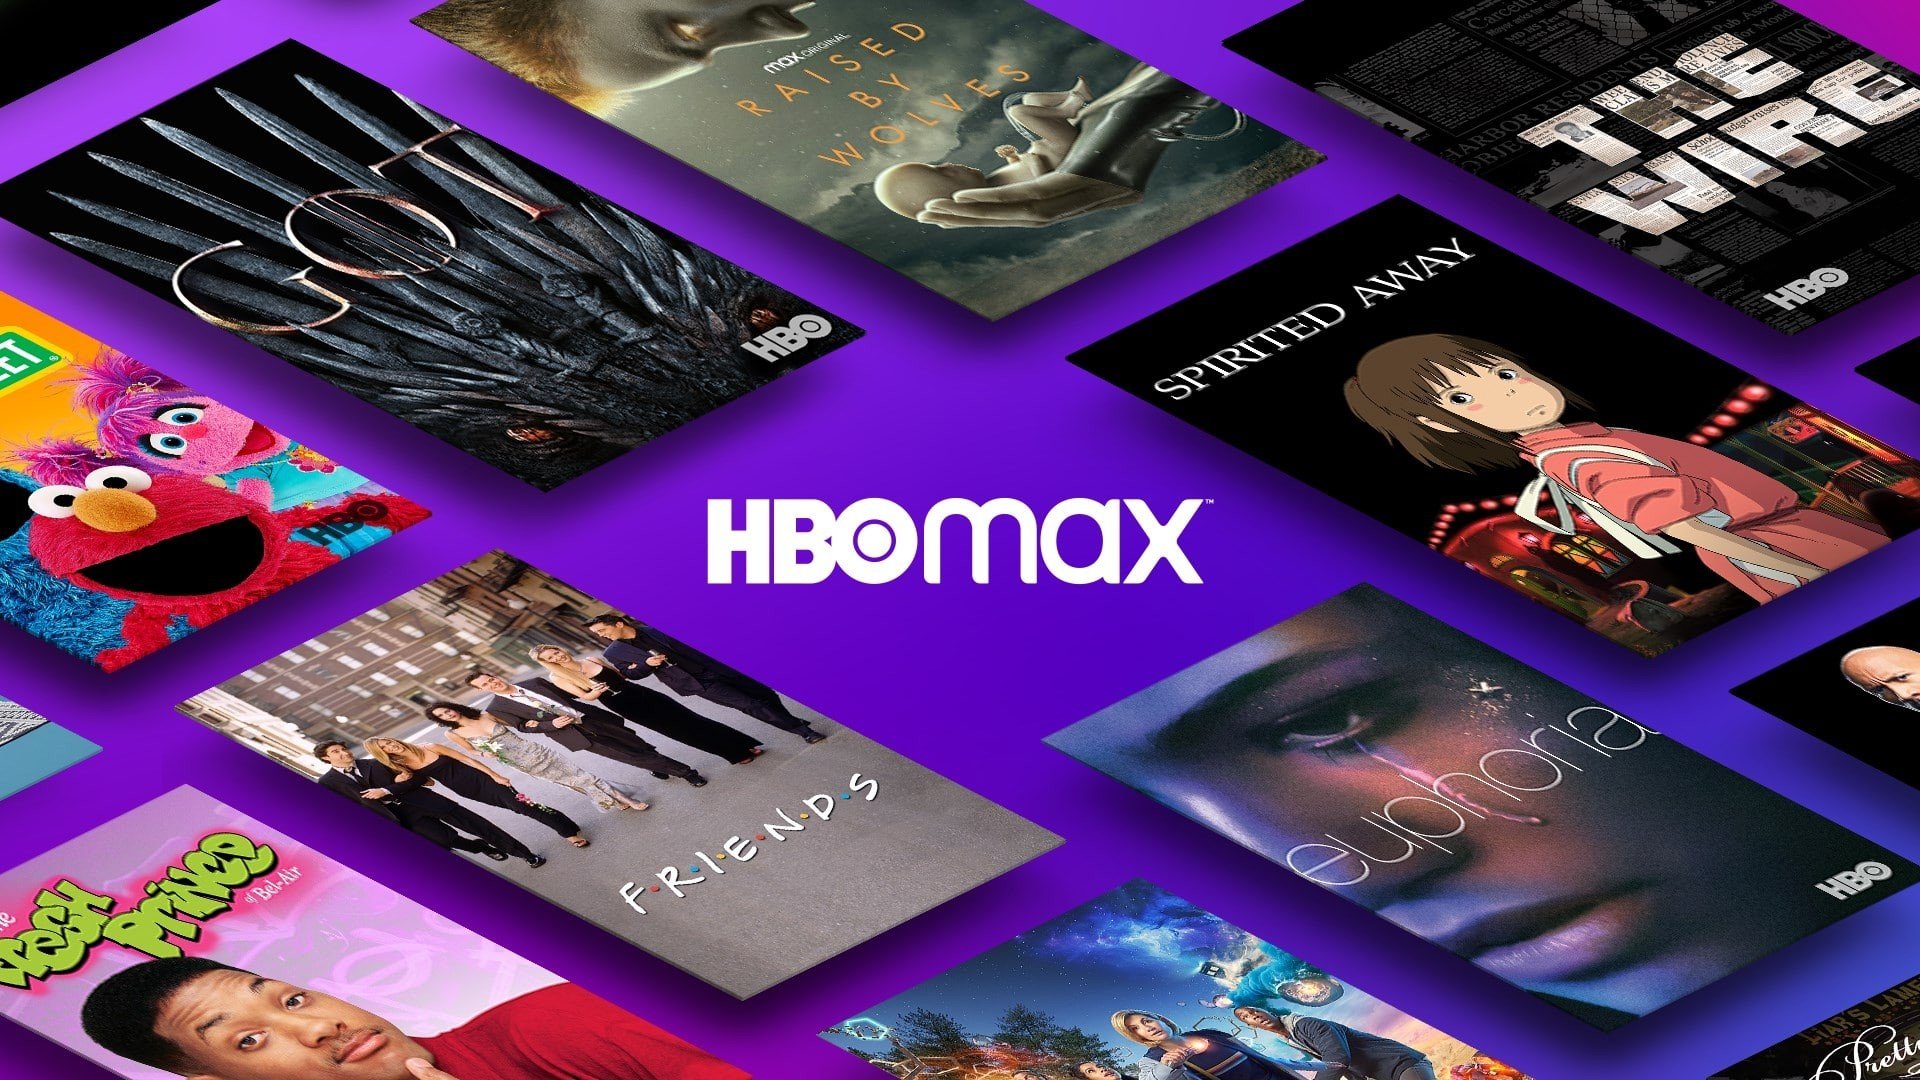 HBO Max extingue plano e aumenta preço de assinatura Multitelas